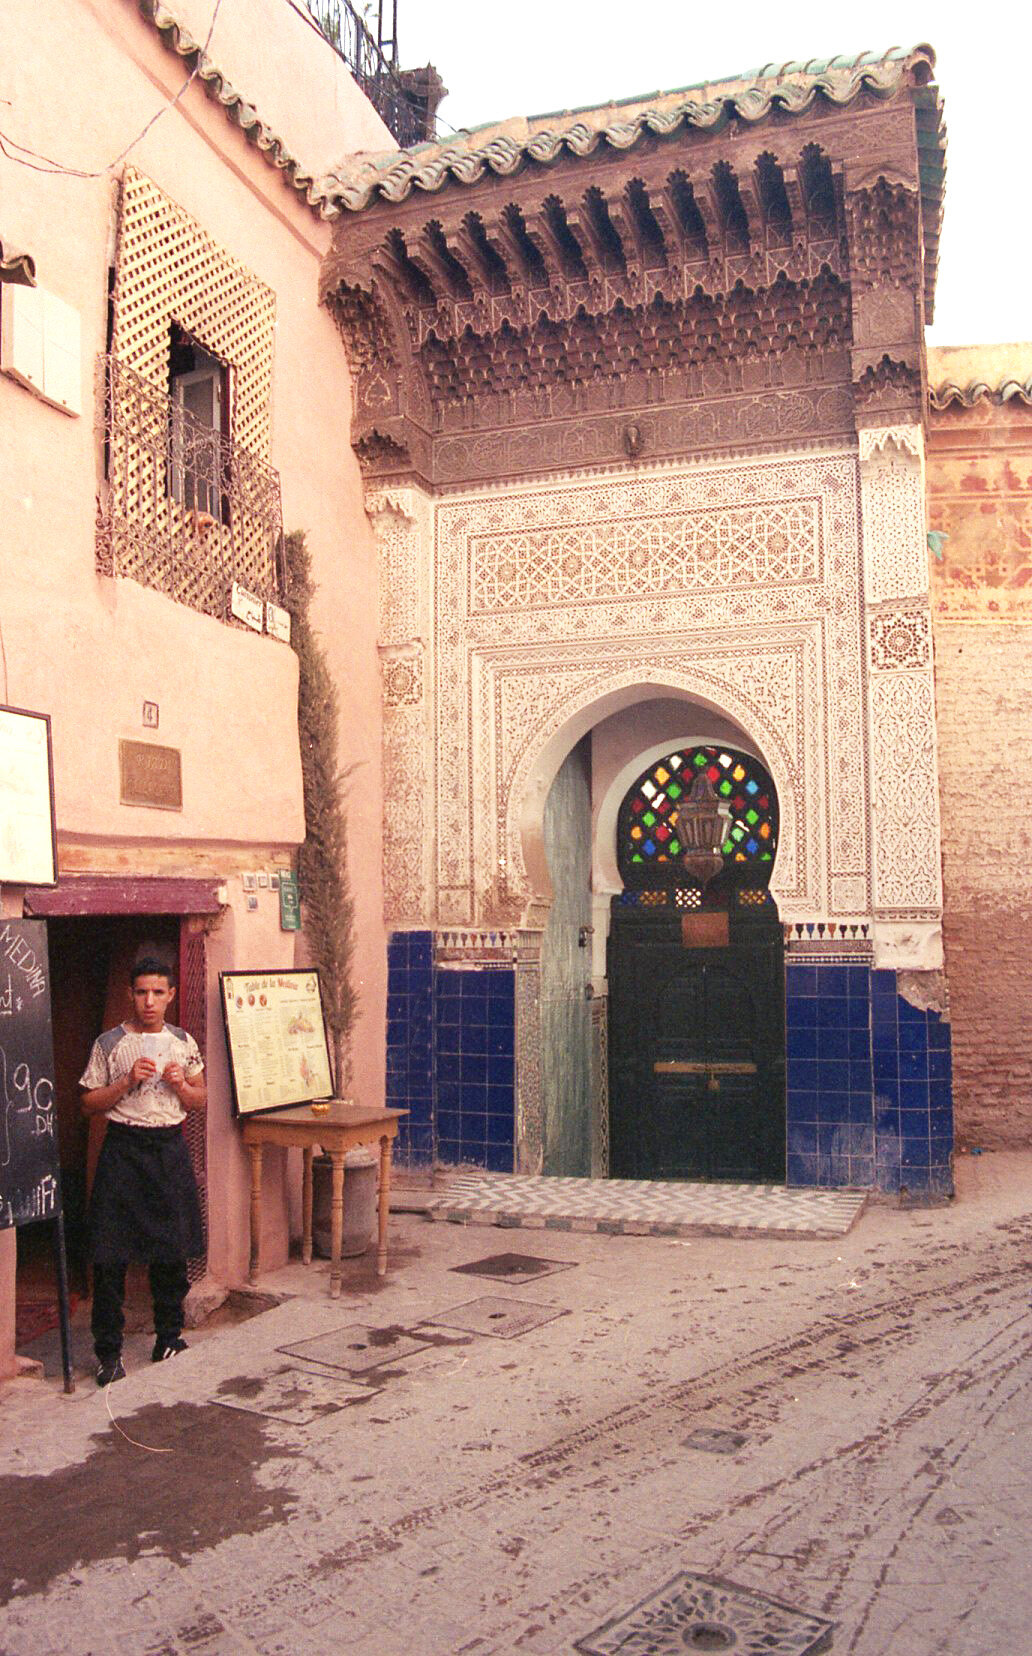   Pausa (2019)   Film  Medina, Marrakech, Morocco 